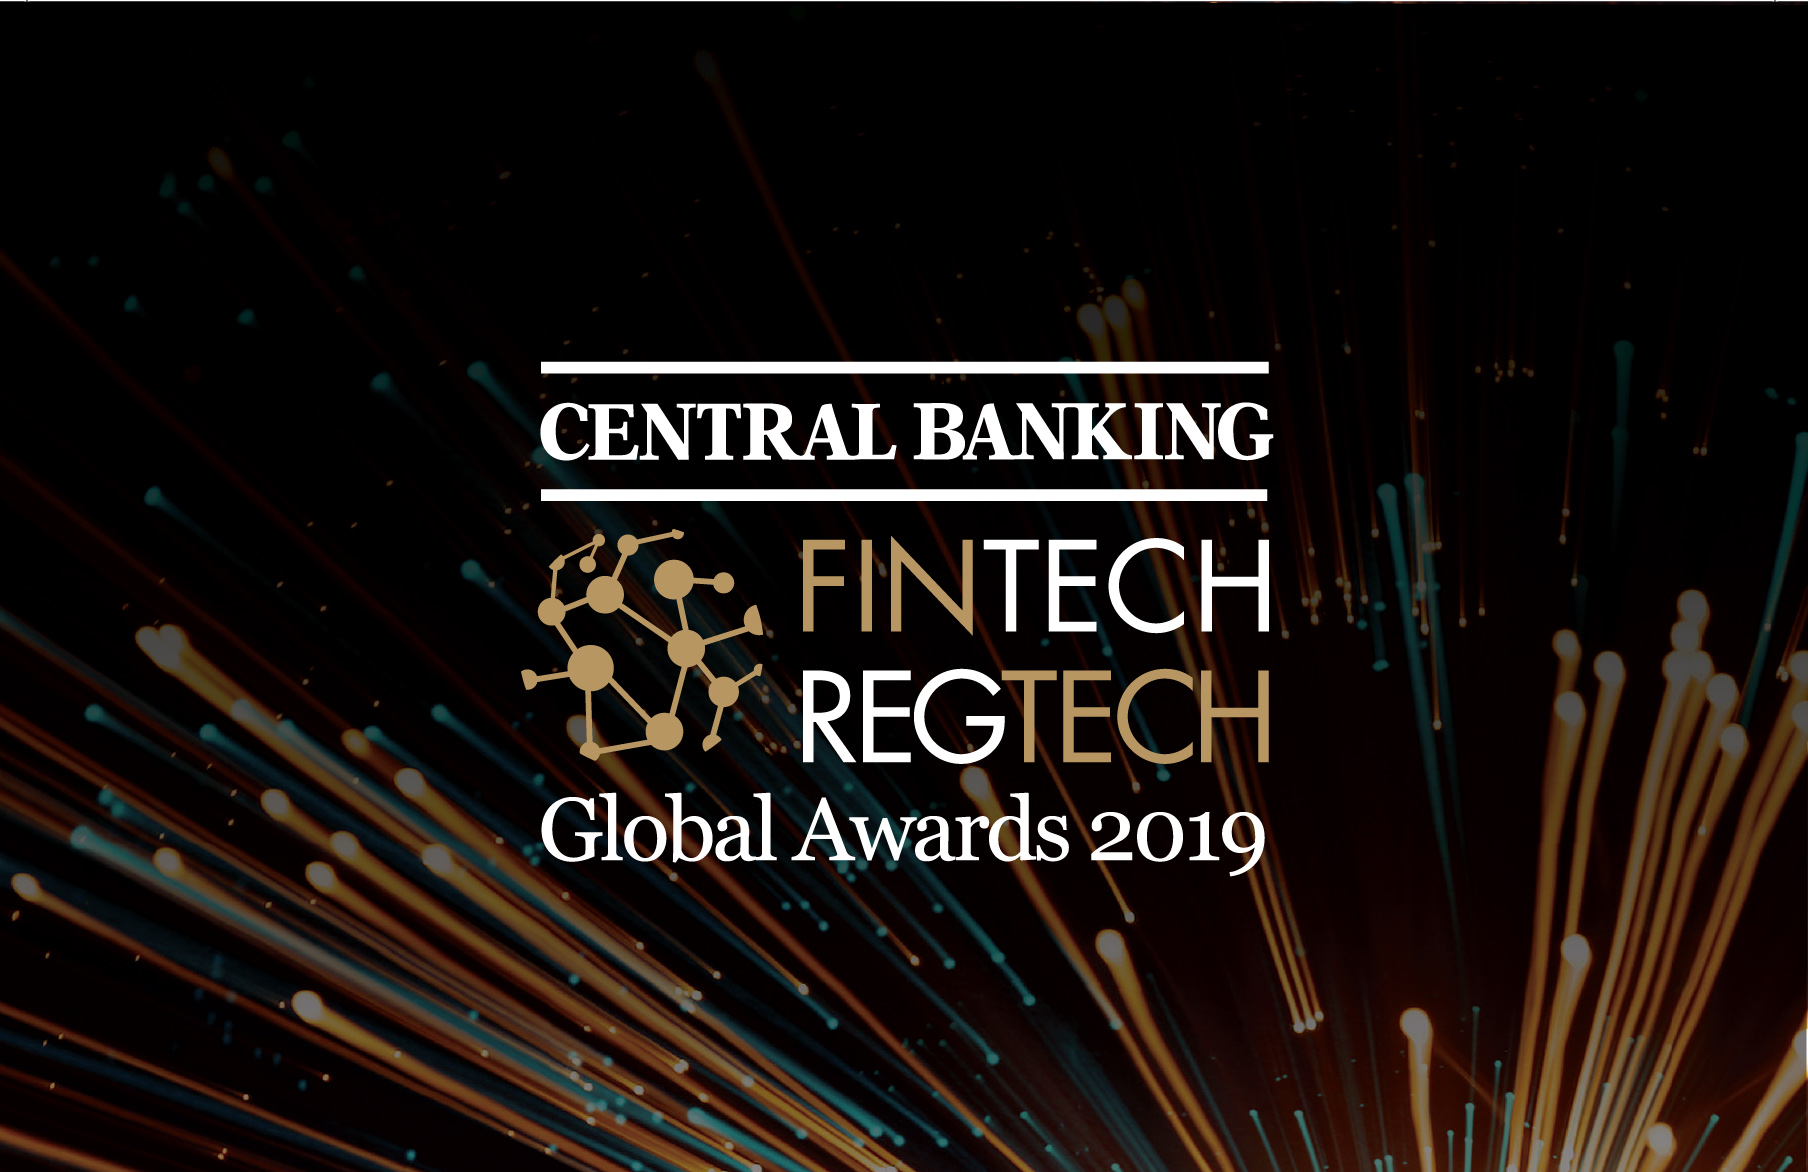 CB Fintech RegTech Global Awards 2019 logo